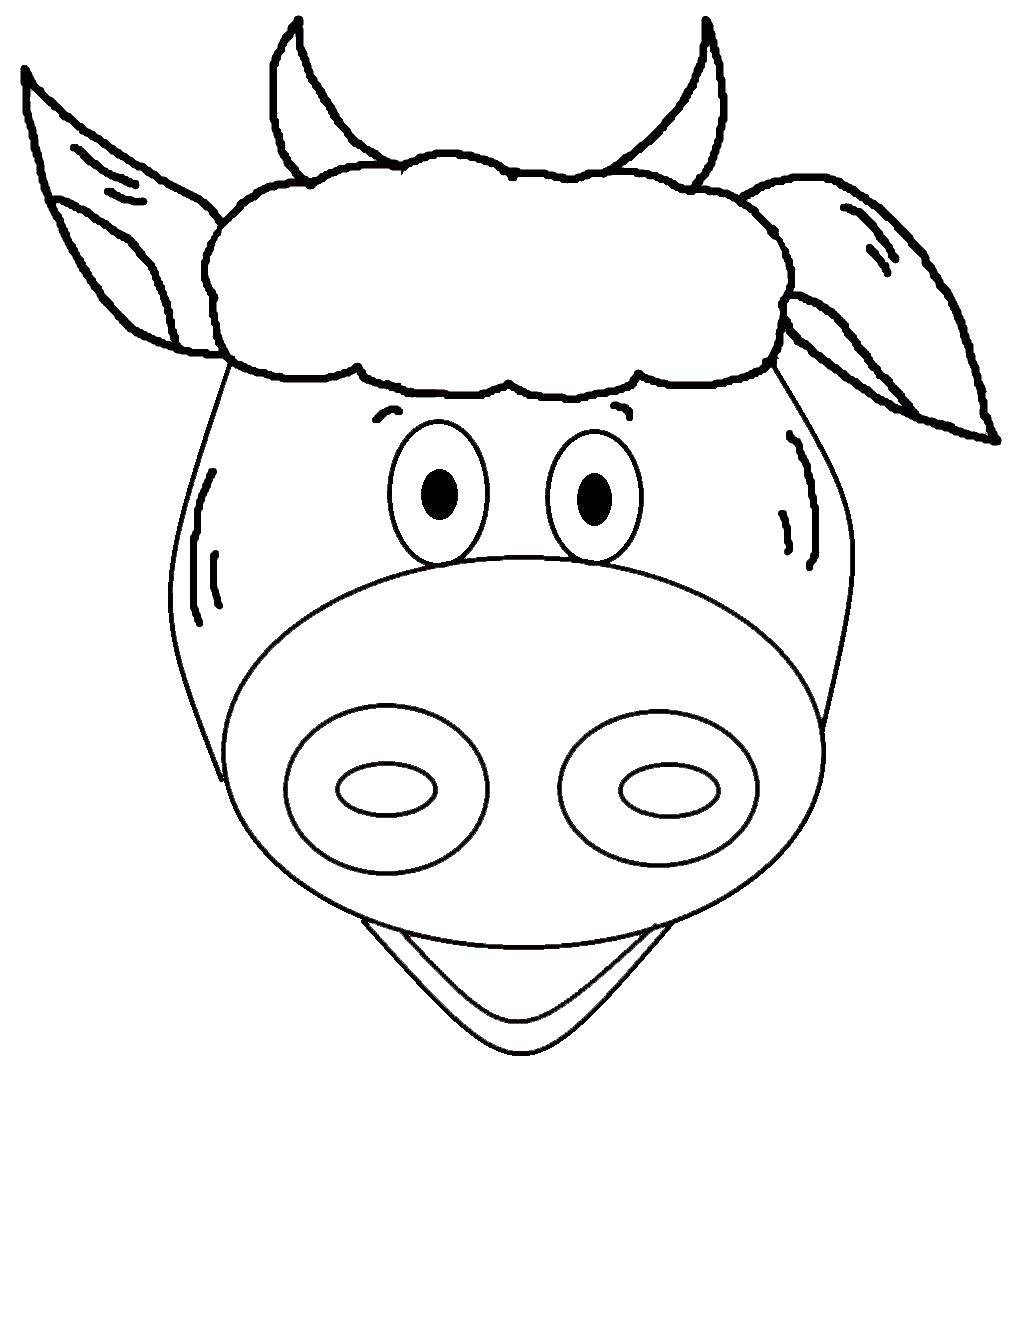 Название: Раскраска Голова коровы. Категория: Контур коровы для вырезания. Теги: голова, корова, контур.